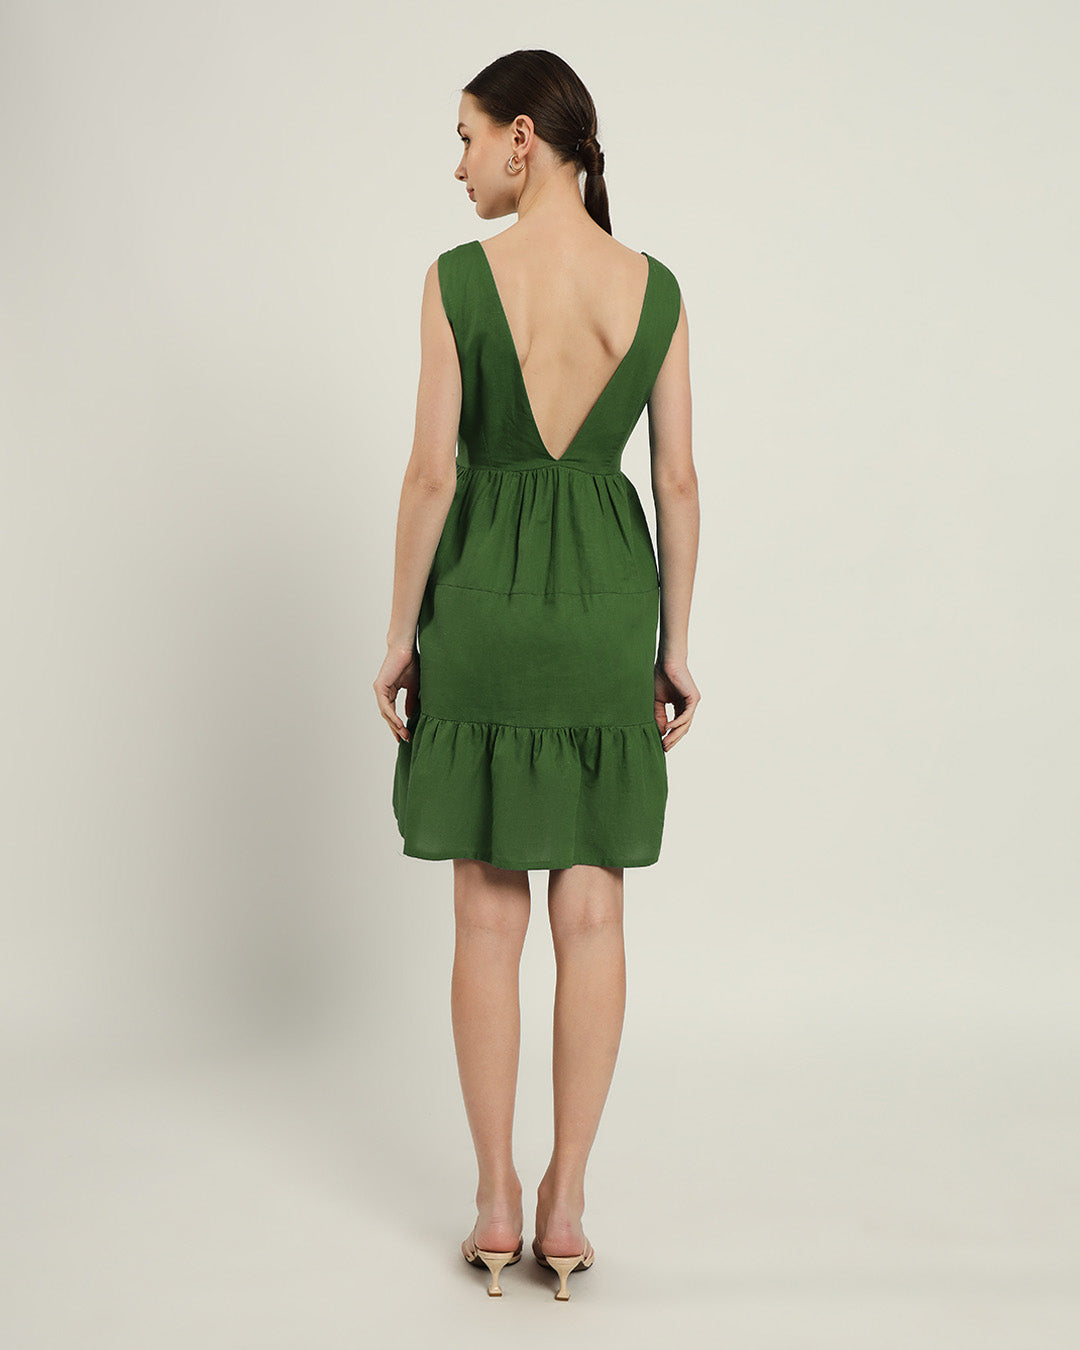 The Minsk Emerald Cotton Dress